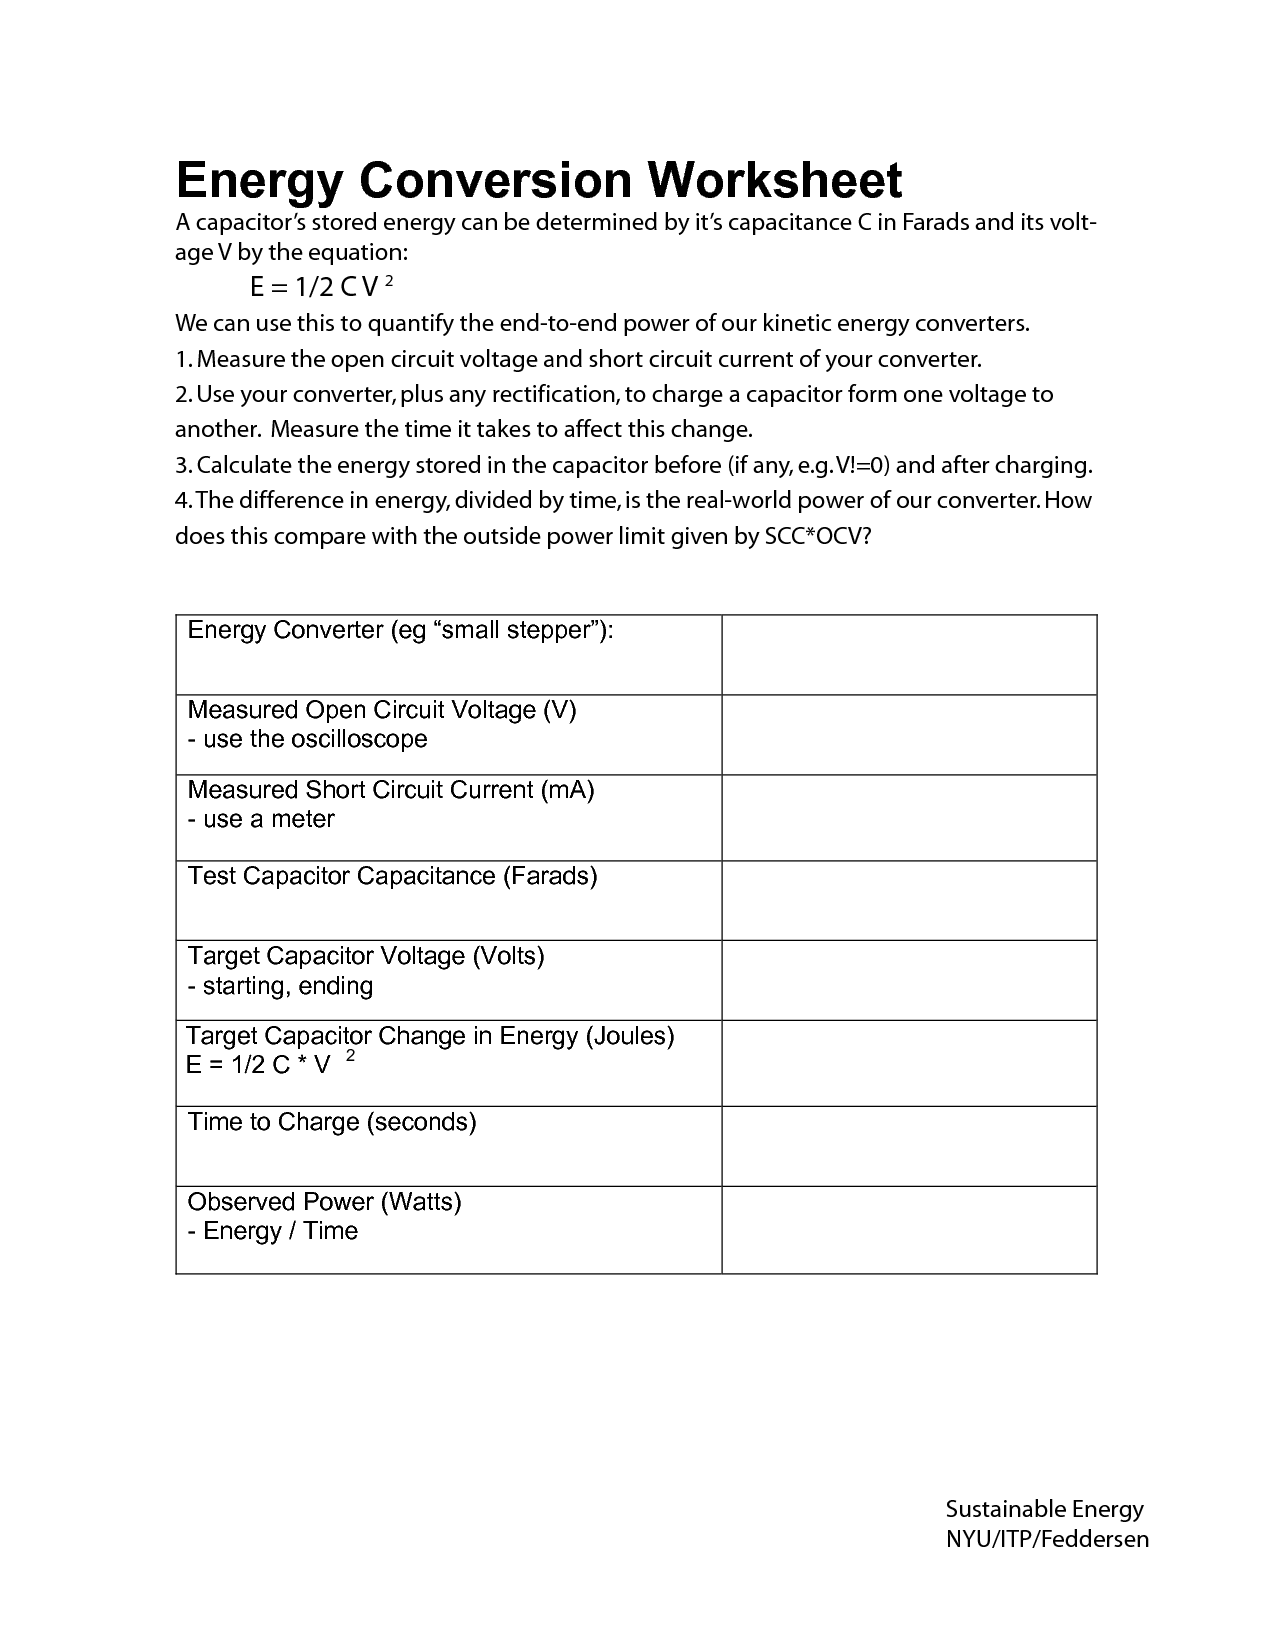 Conservation of Energy Worksheet Answer Key Image